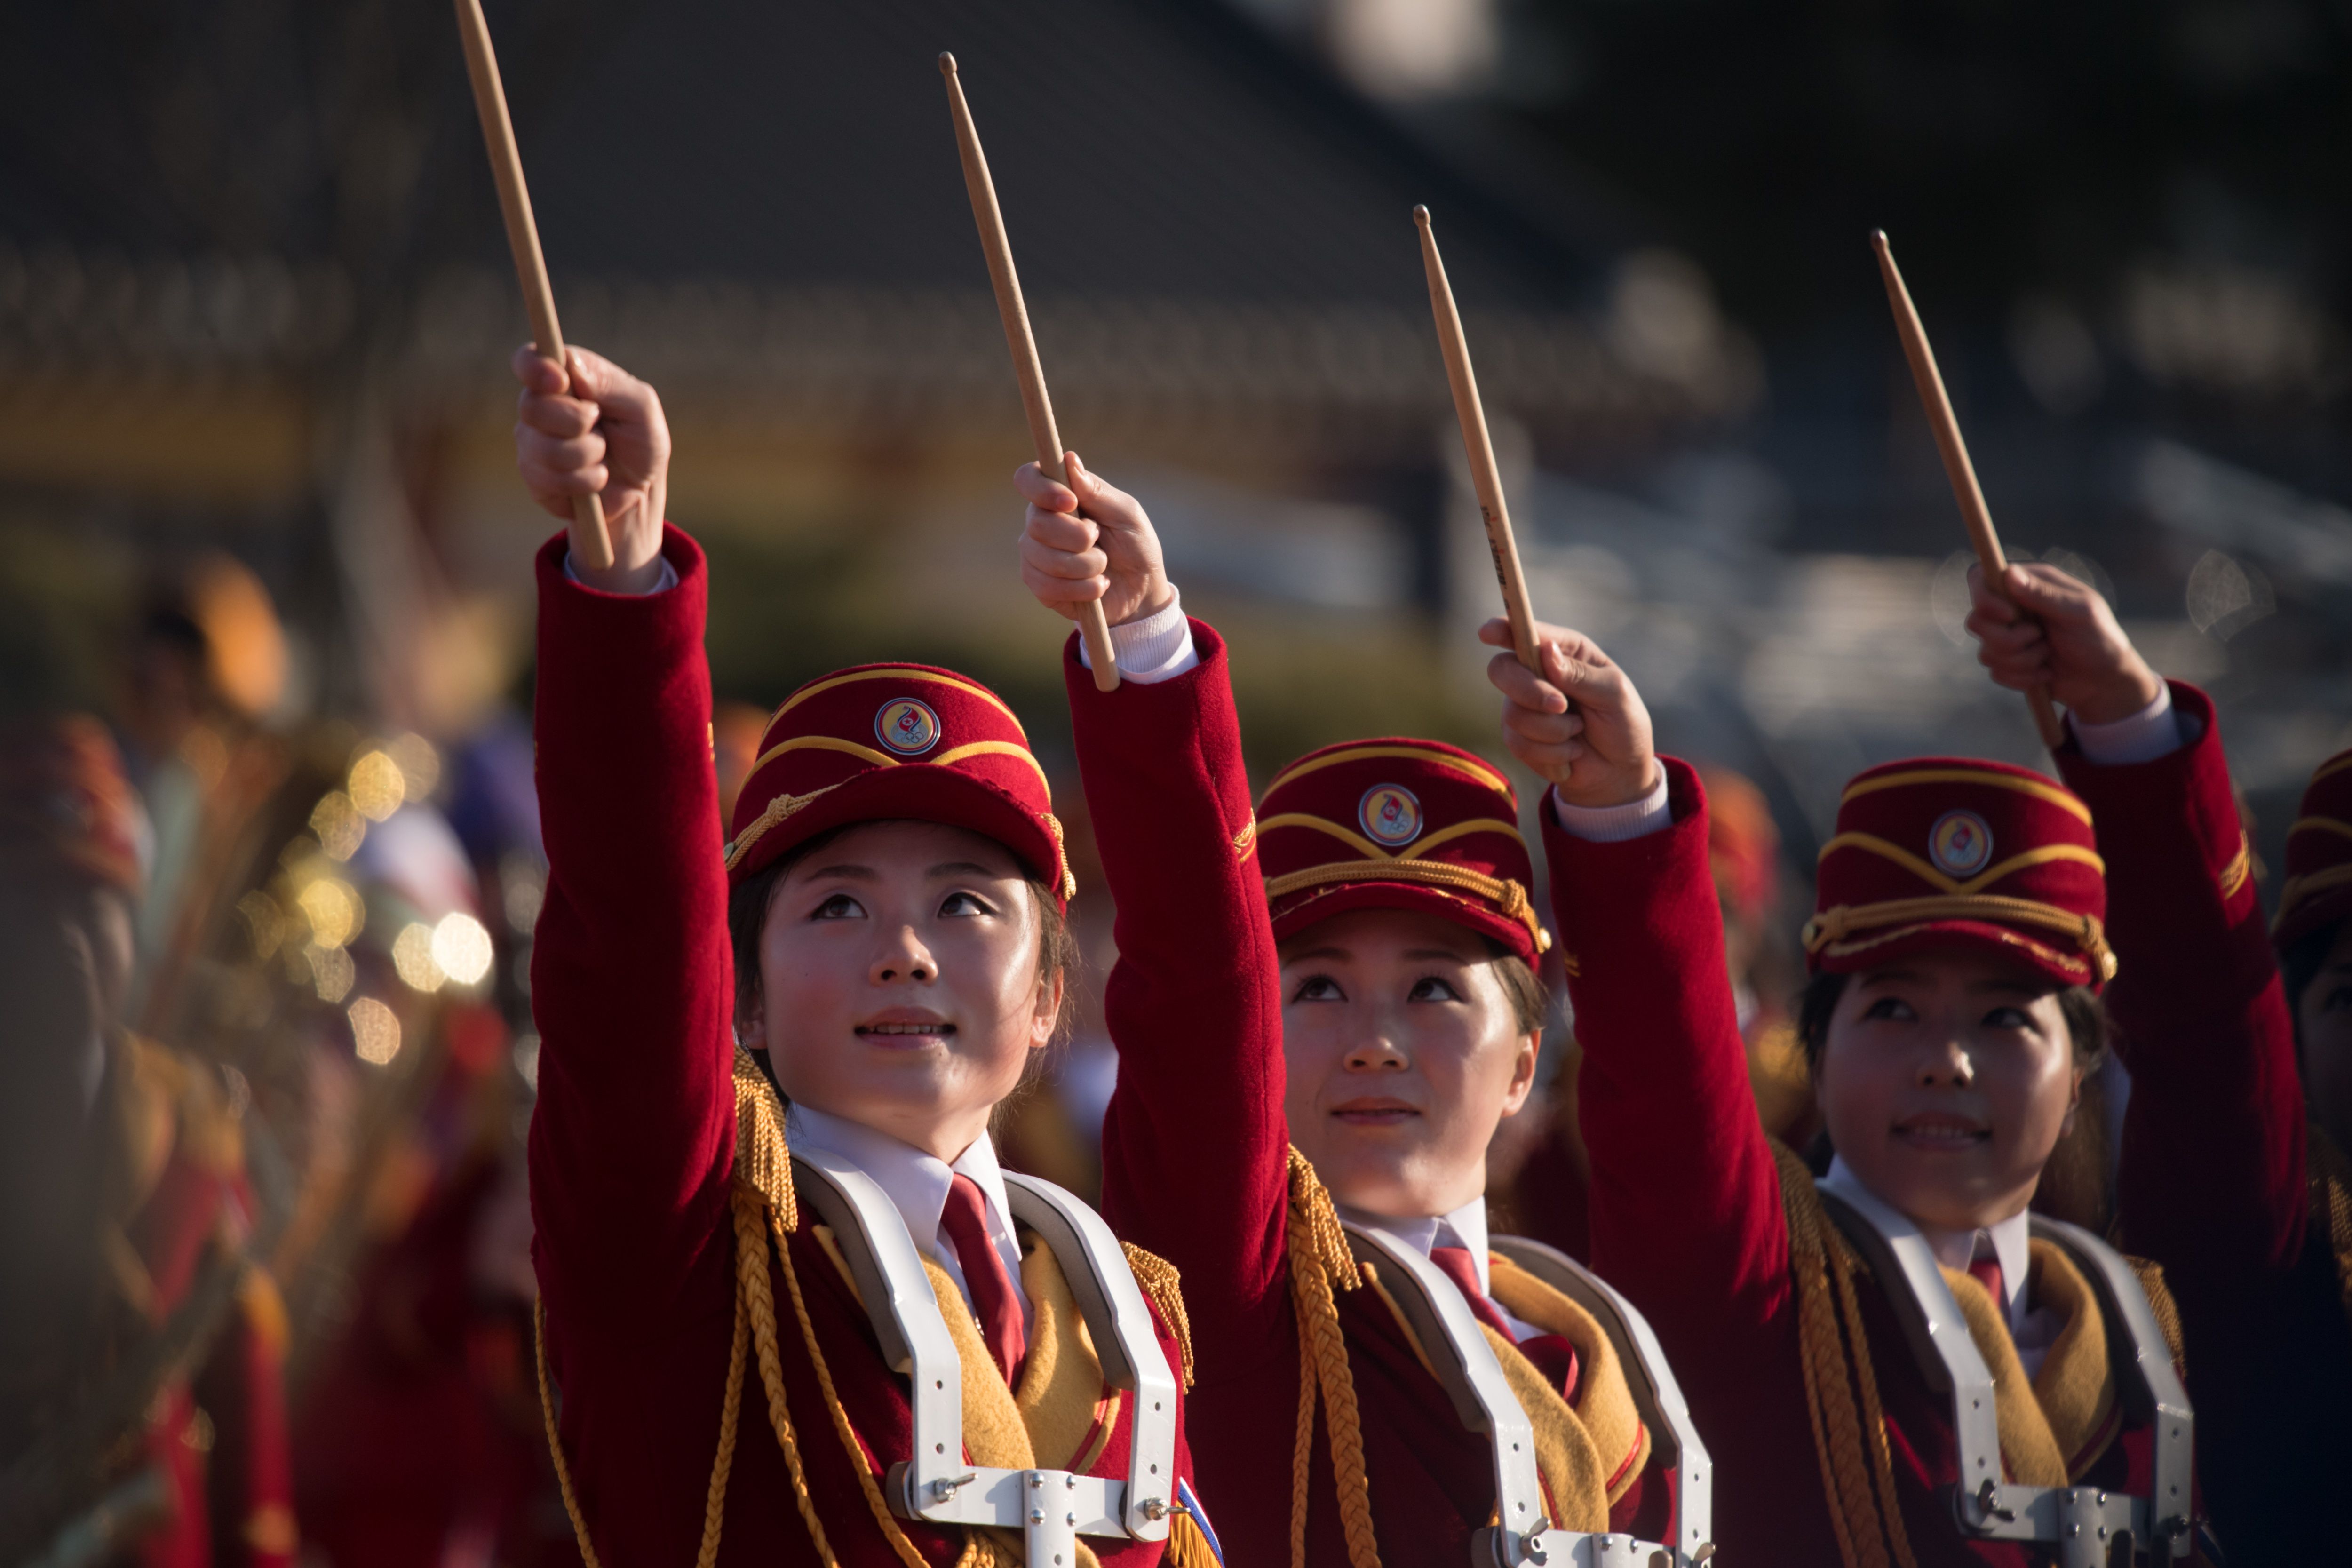 عروض موسيقية لحسناوات كوريا الشمالية فى الشطر الجنوبى